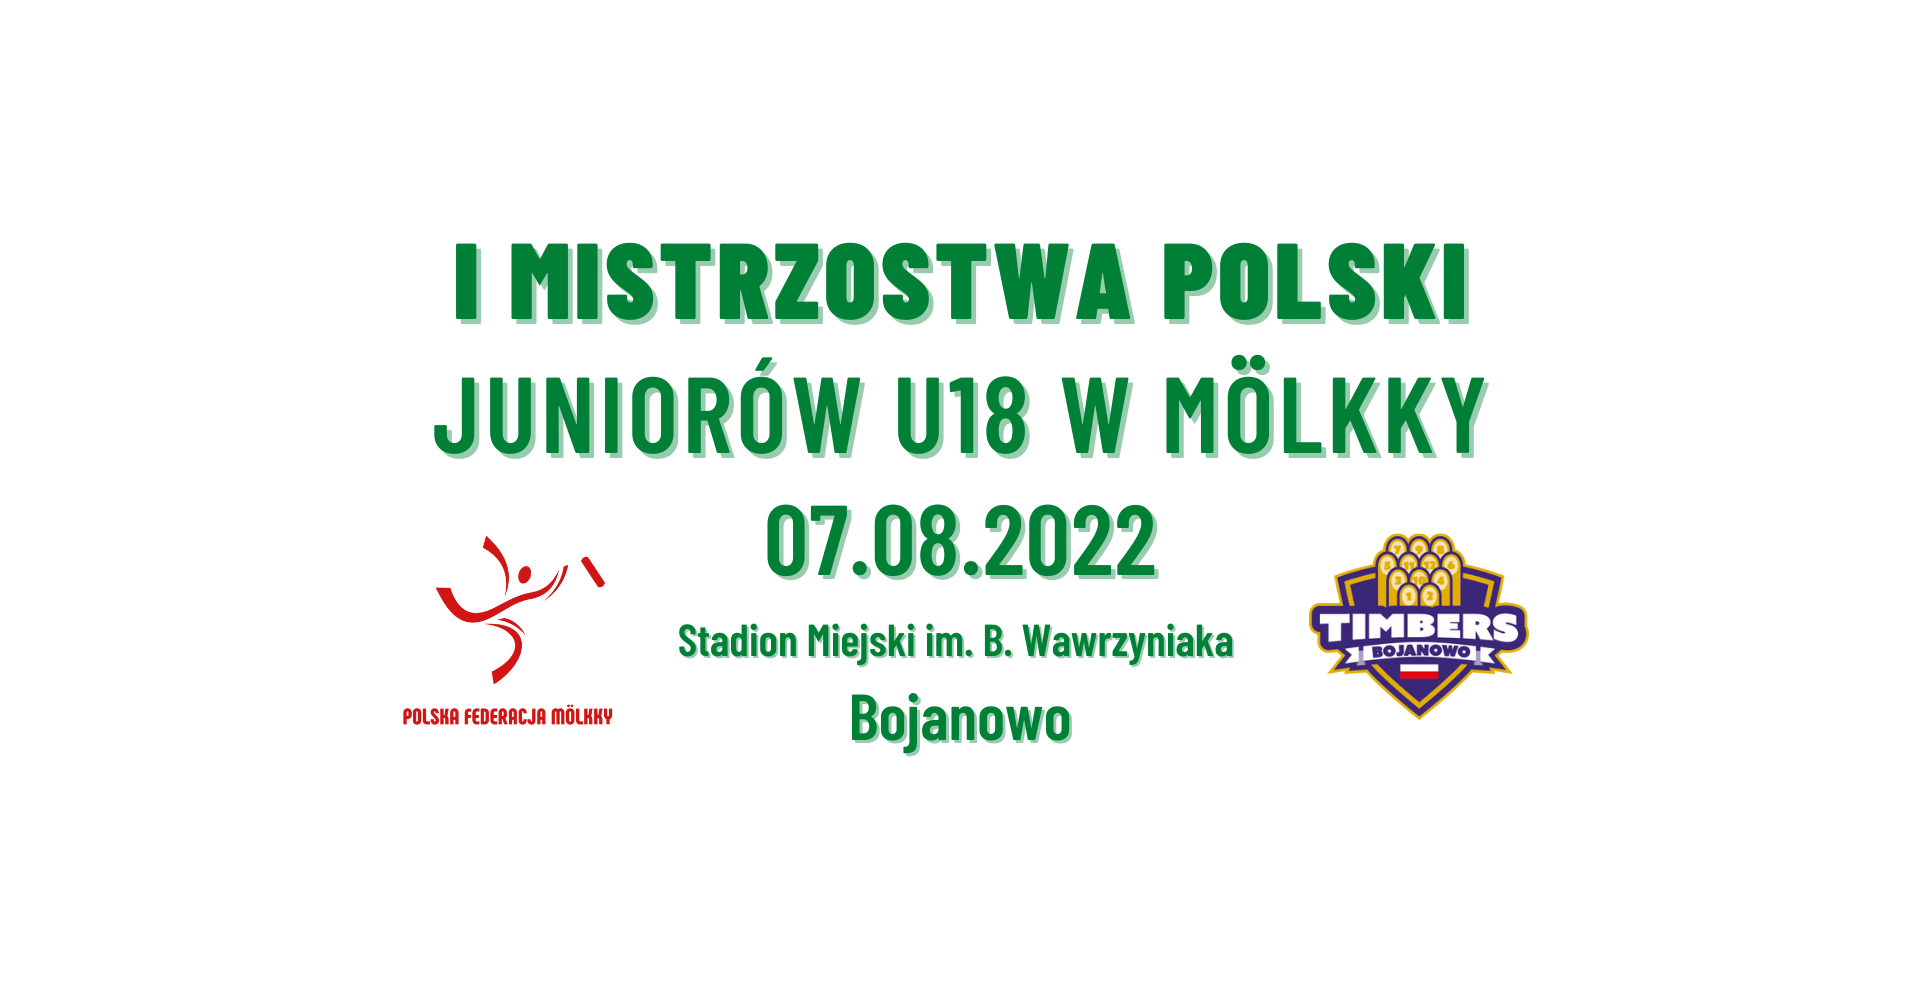 Mistrzostwa Polski Juniorów U18 w Mölkky